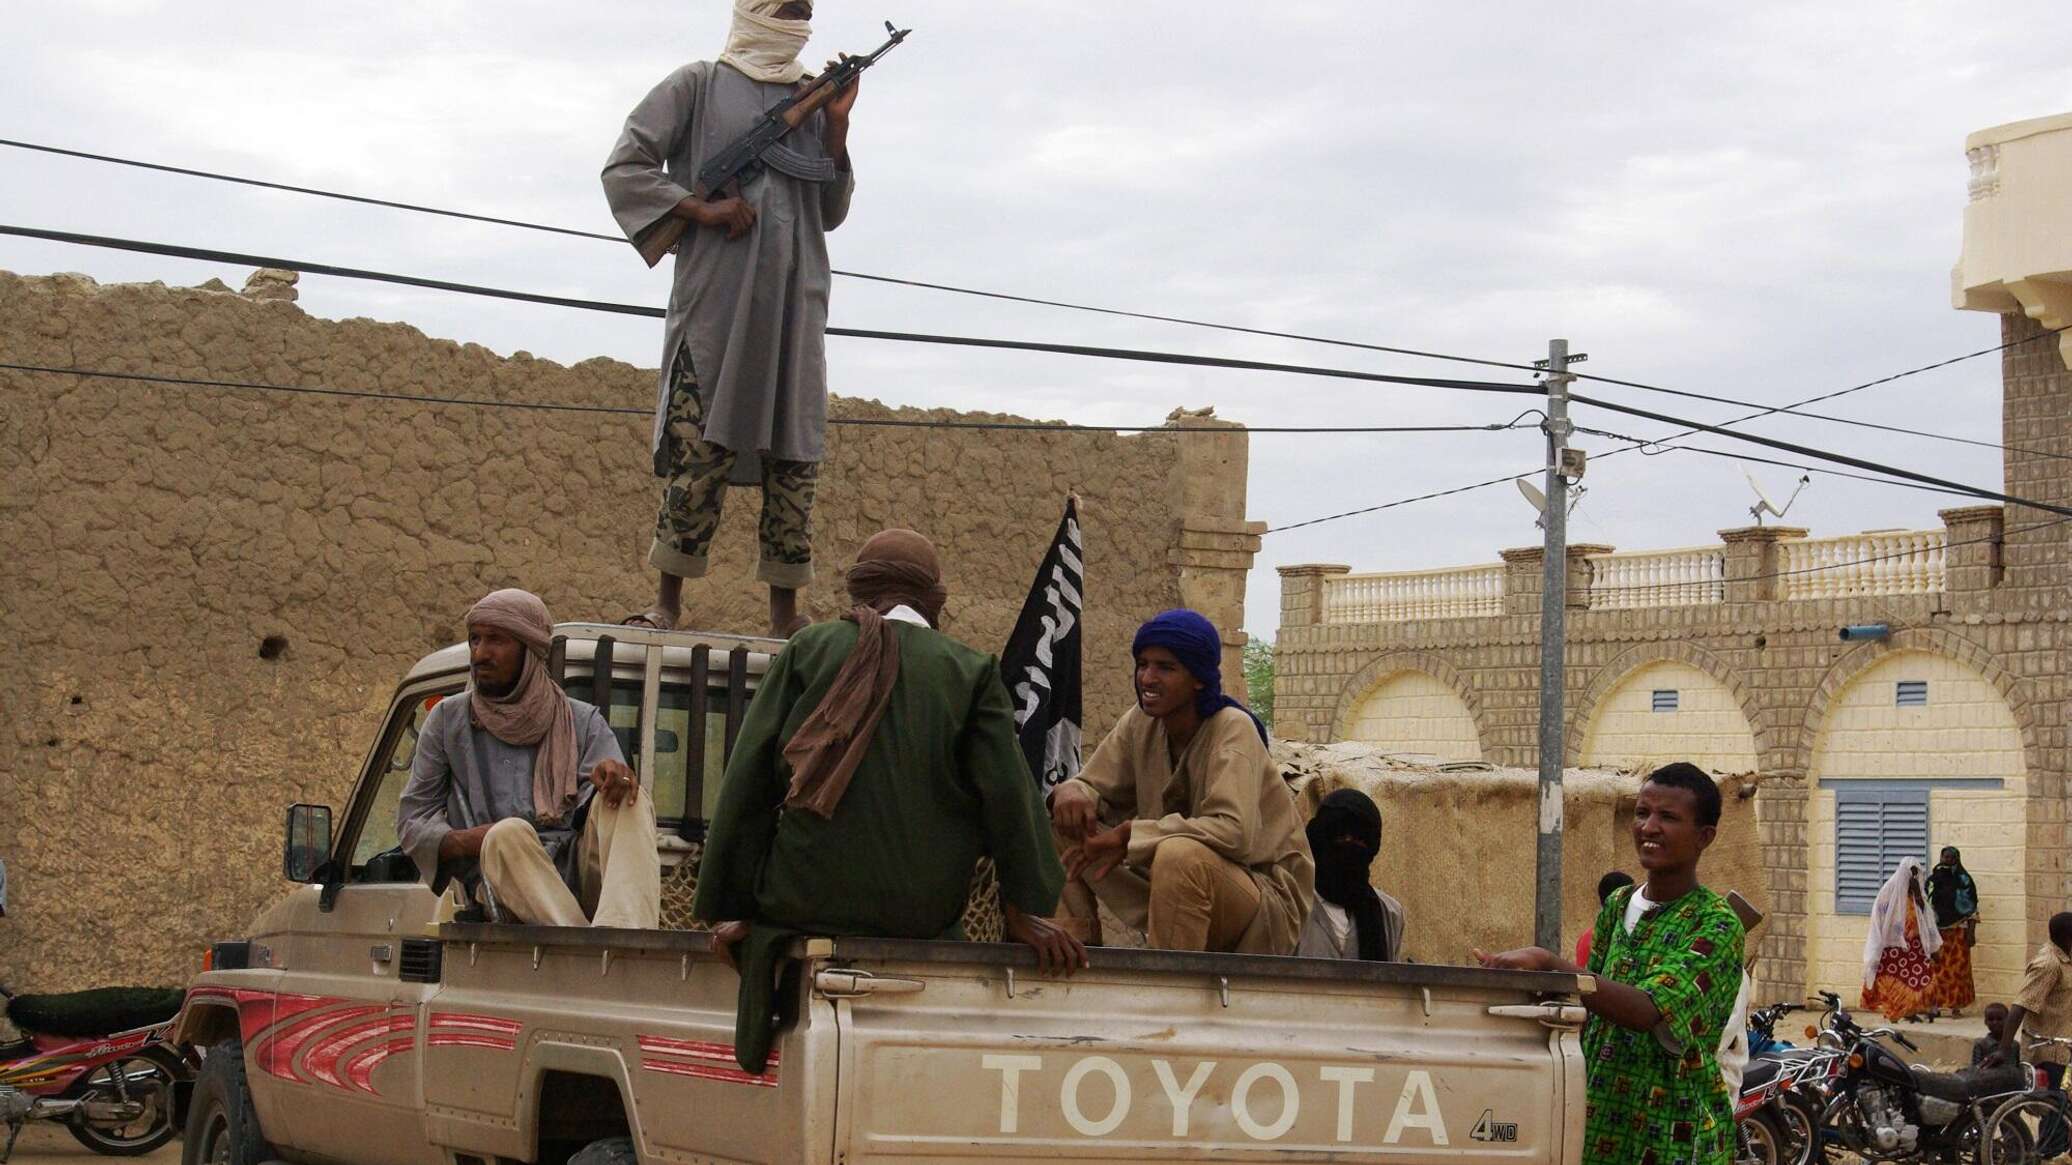 خبراء يكشفون تفاصيل الصراع بين التنظيمات الإرهابية في أفريقيا